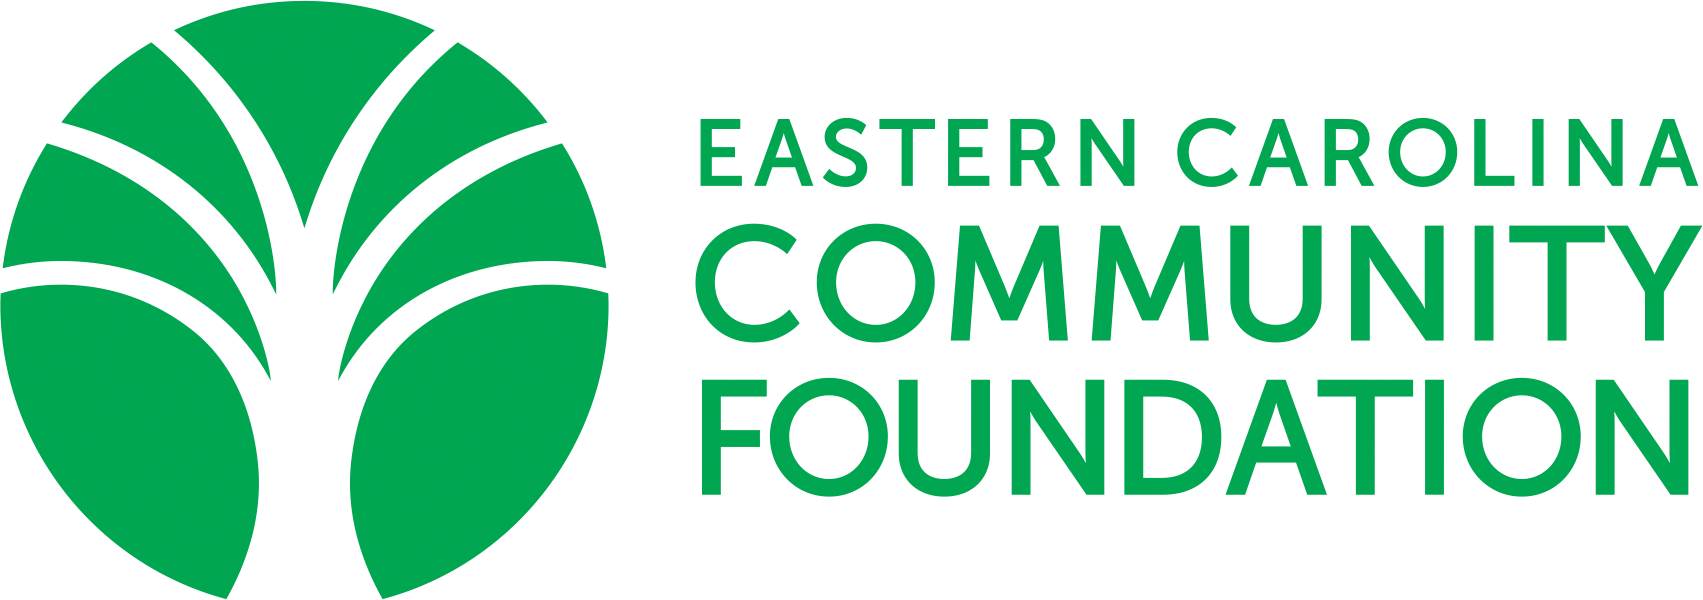 Eastern Carolina Community Foundation Logo